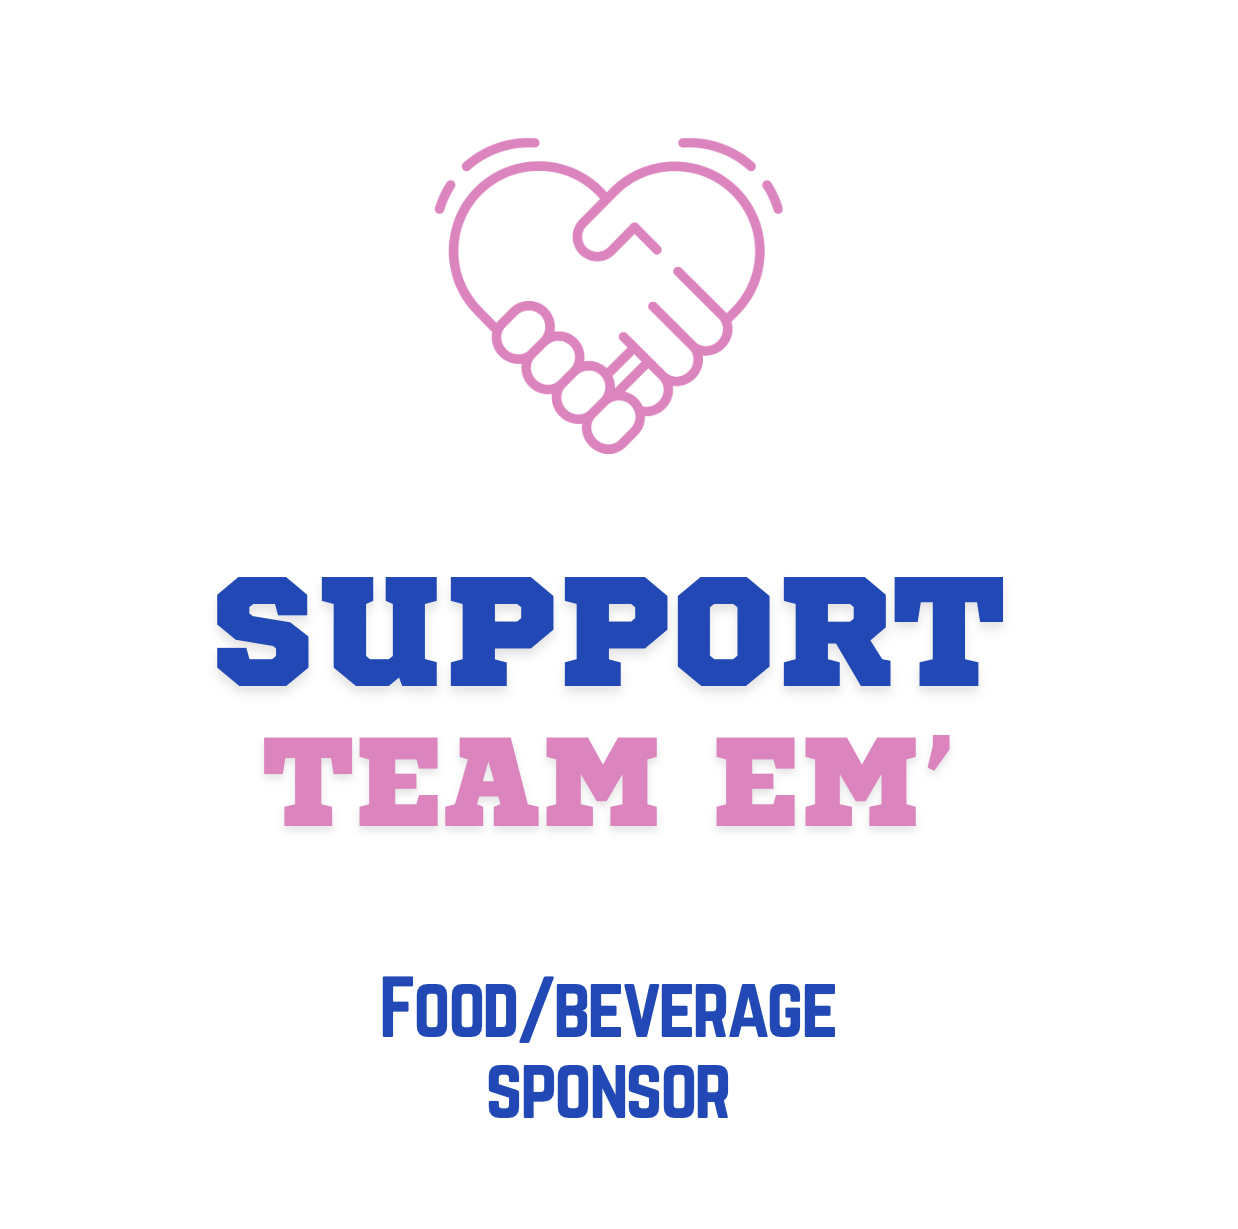 Food/Beverage Sponsor